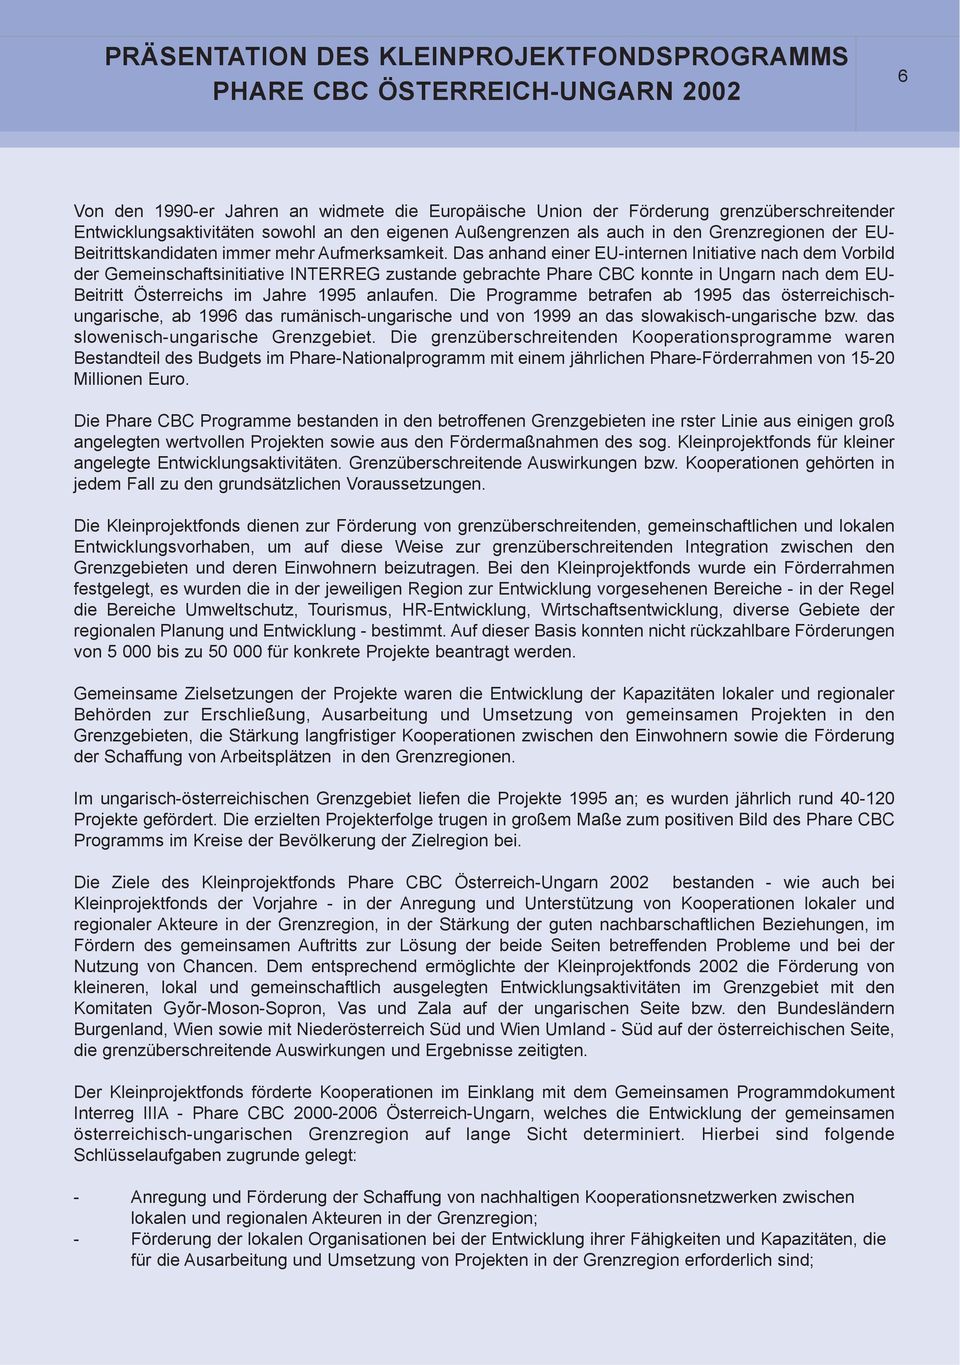 Das anhand einer EU-internen Initiative nach dem Vorbild der Gemeinschaftsinitiative INTERREG zustande gebrachte Phare CBC konnte in Ungarn nach dem EU- Beitritt Österreichs im Jahre 1995 anlaufen.